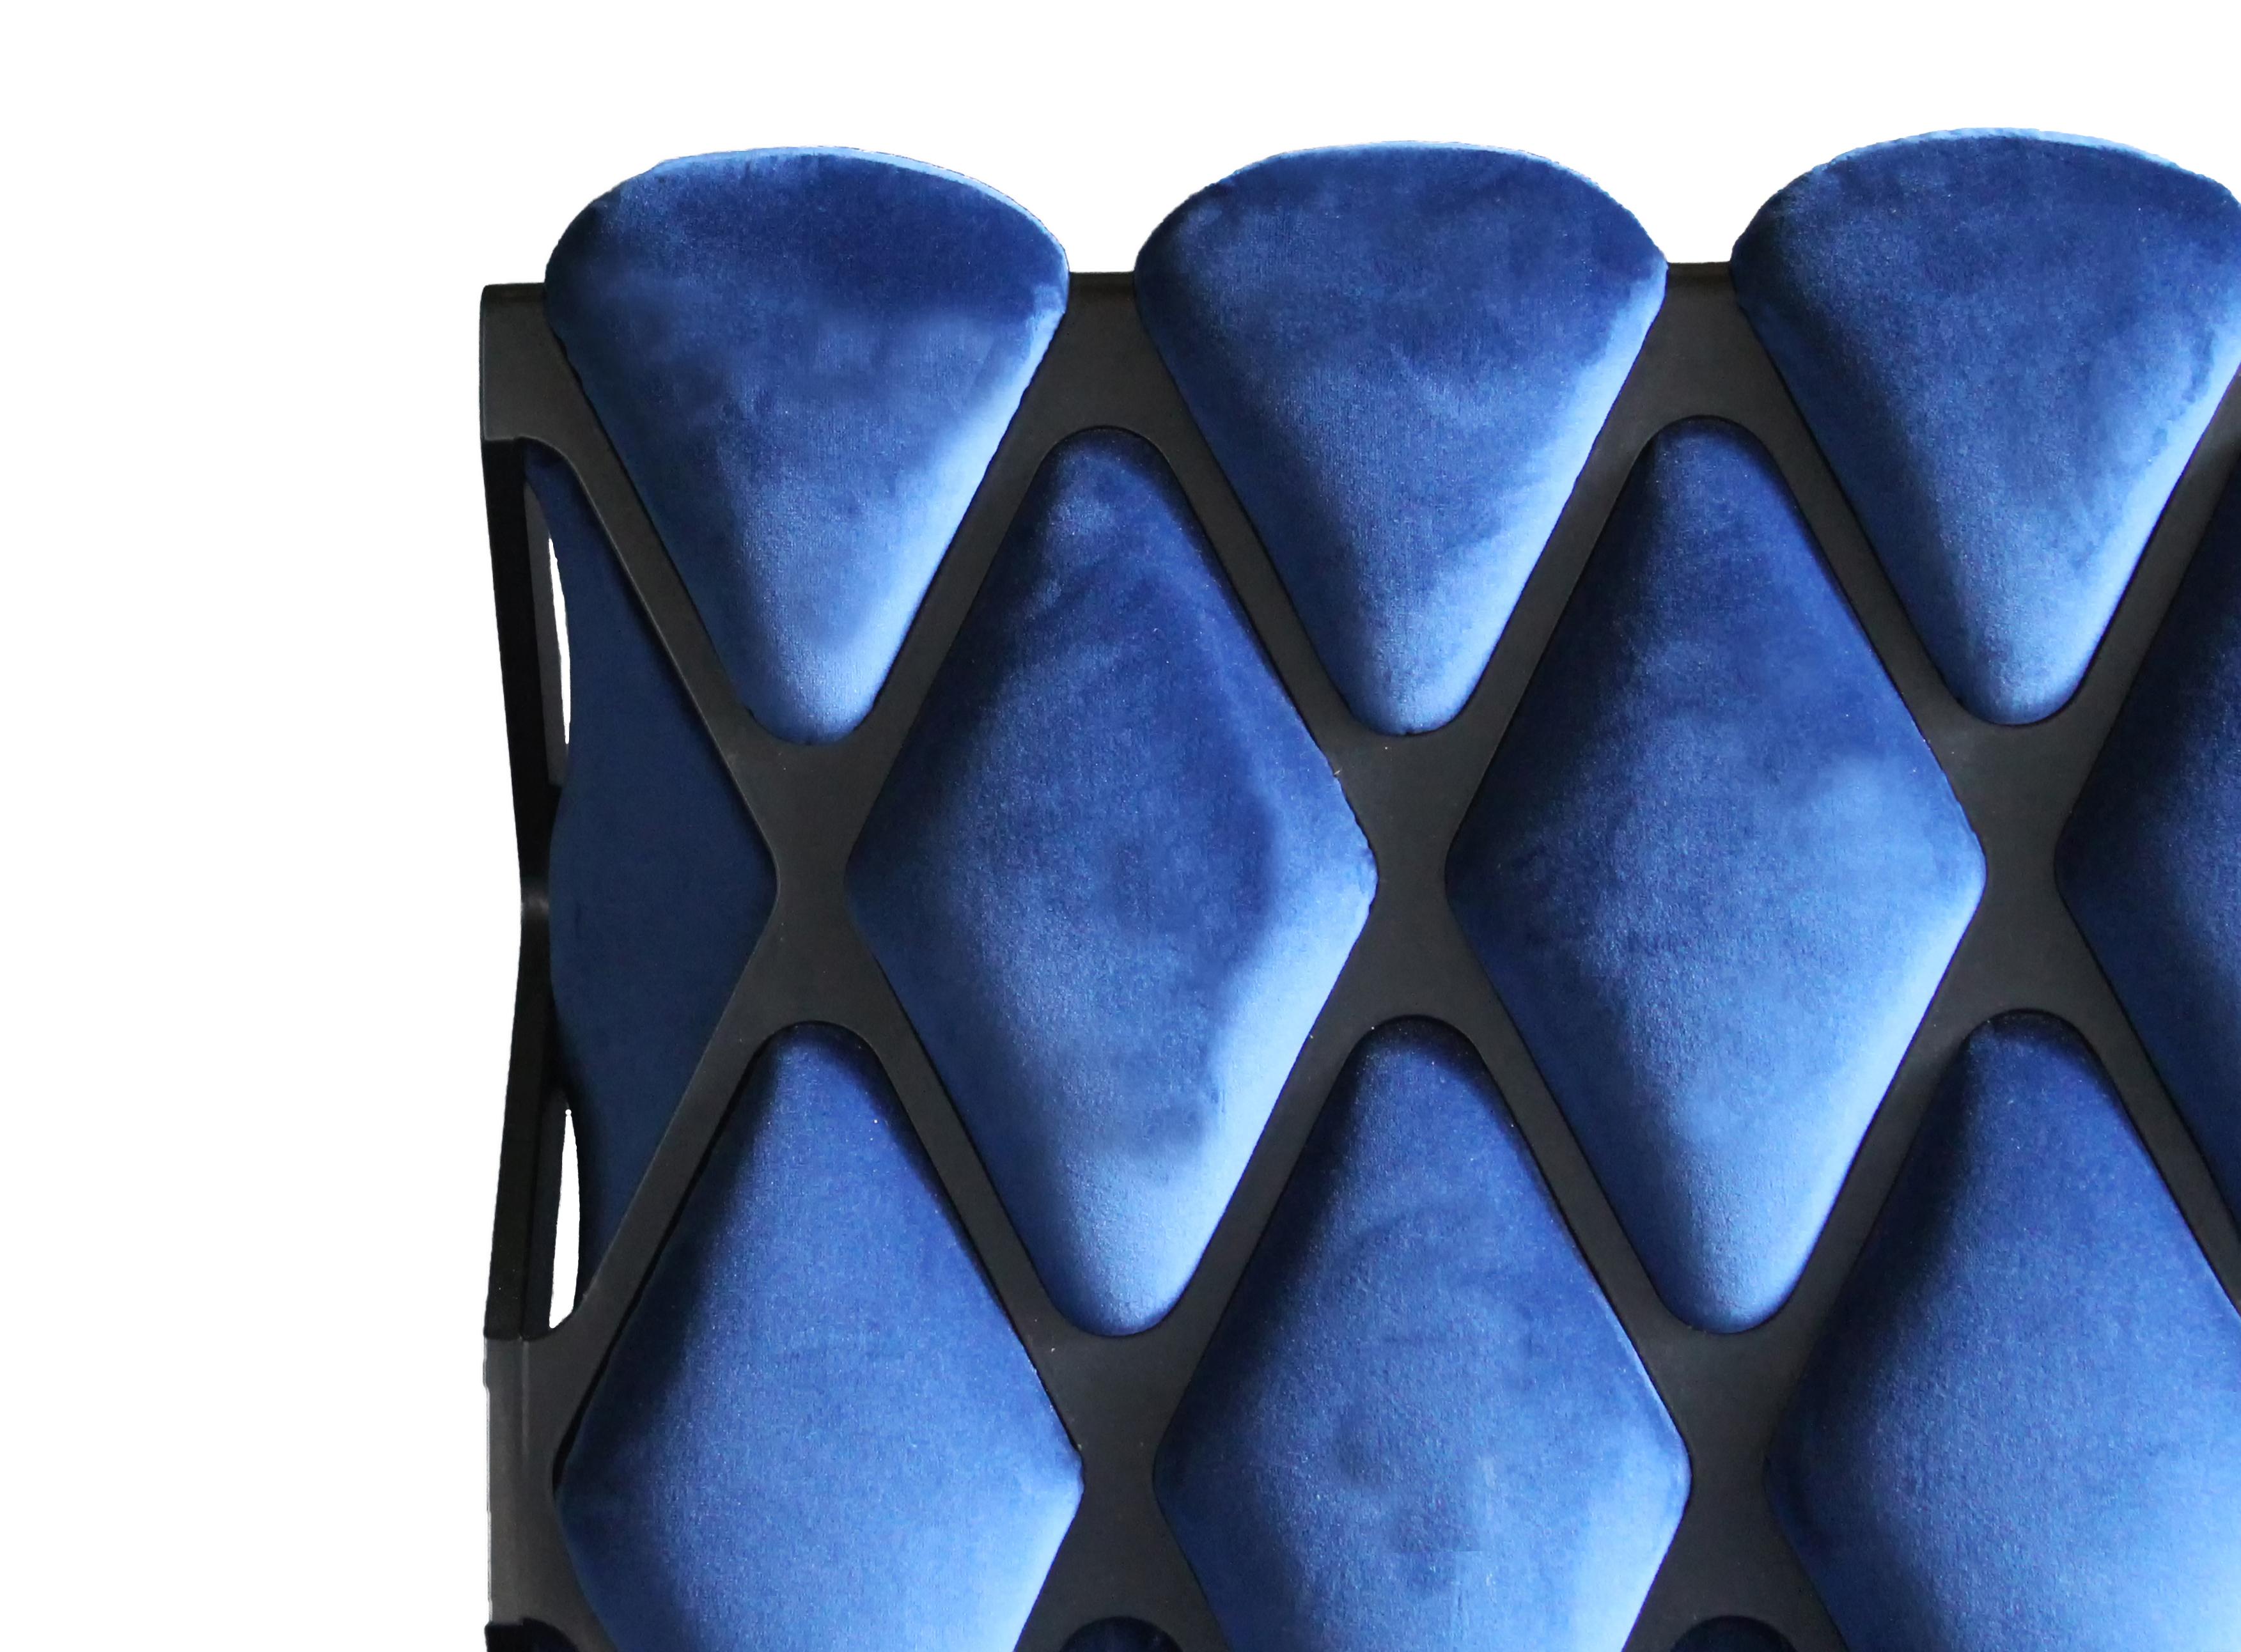 La chaise Matrice est un subtil corset d'acier qui comprime un matériau souple et confortable ; un joli rappel du savoir-faire traditionnel italien, lorsque le verre soufflé assemblait la structure métallique de la lampe au début du XXe siècle.